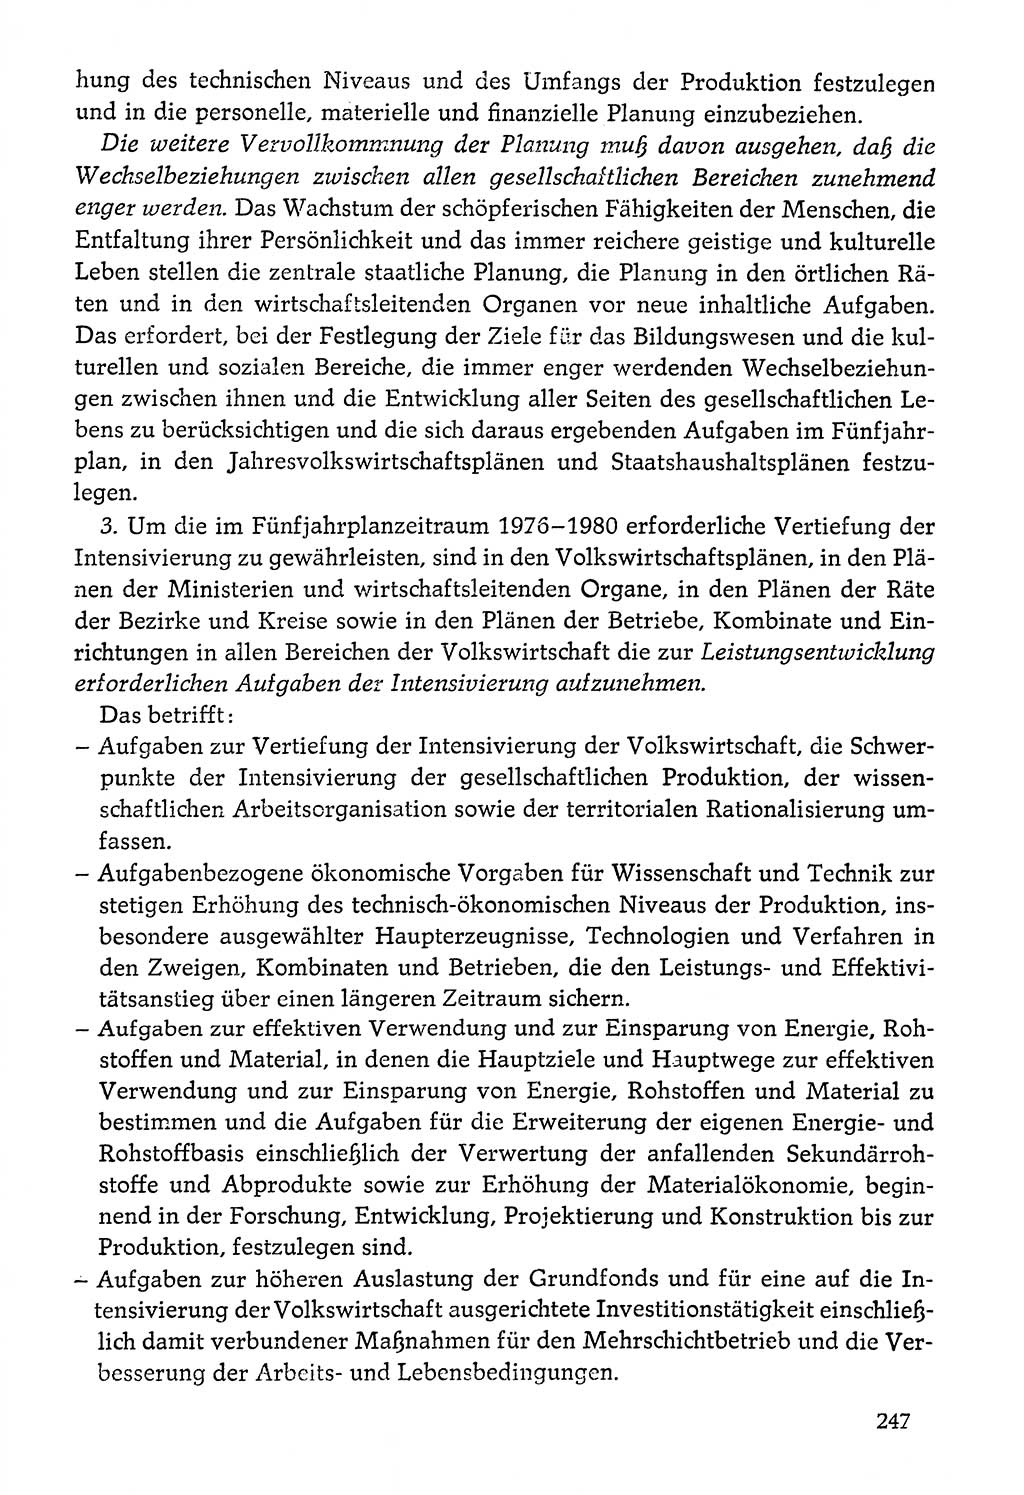 Dokumente der Sozialistischen Einheitspartei Deutschlands (SED) [Deutsche Demokratische Republik (DDR)] 1976-1977, Seite 247 (Dok. SED DDR 1976-1977, S. 247)